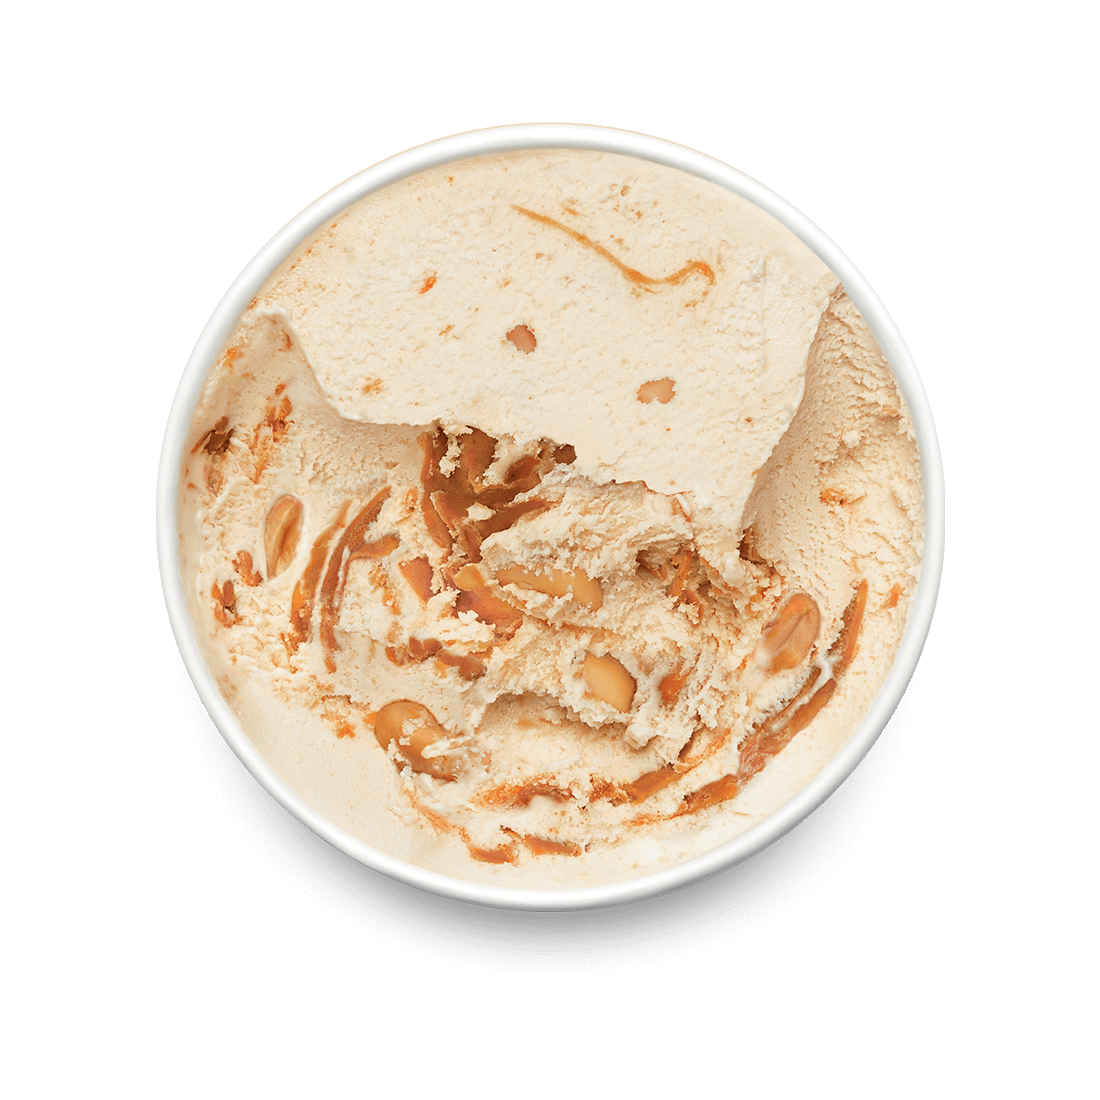 peanut butter crunch pint lid off